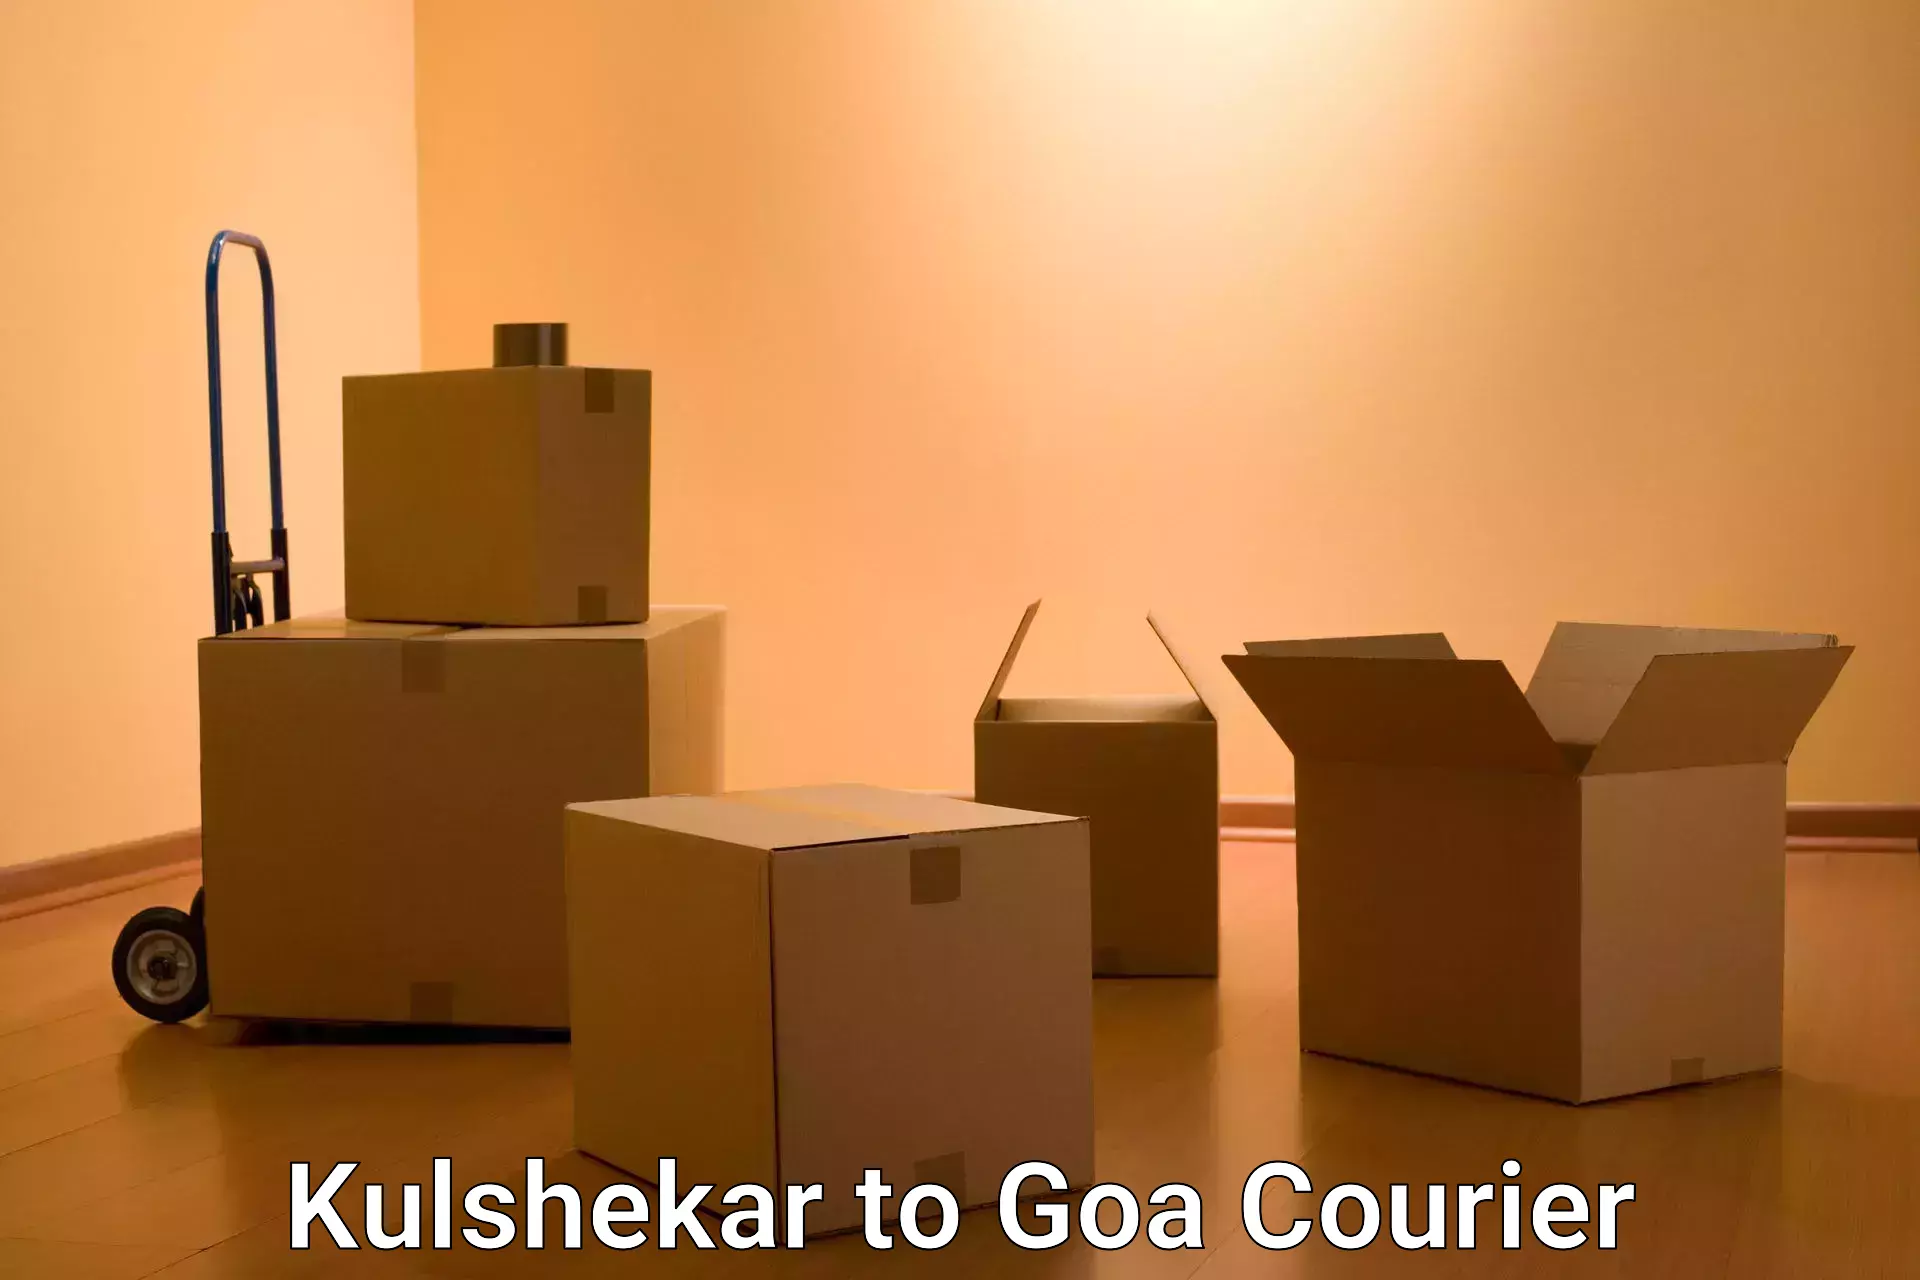 Customer-centric shipping in Kulshekar to Goa